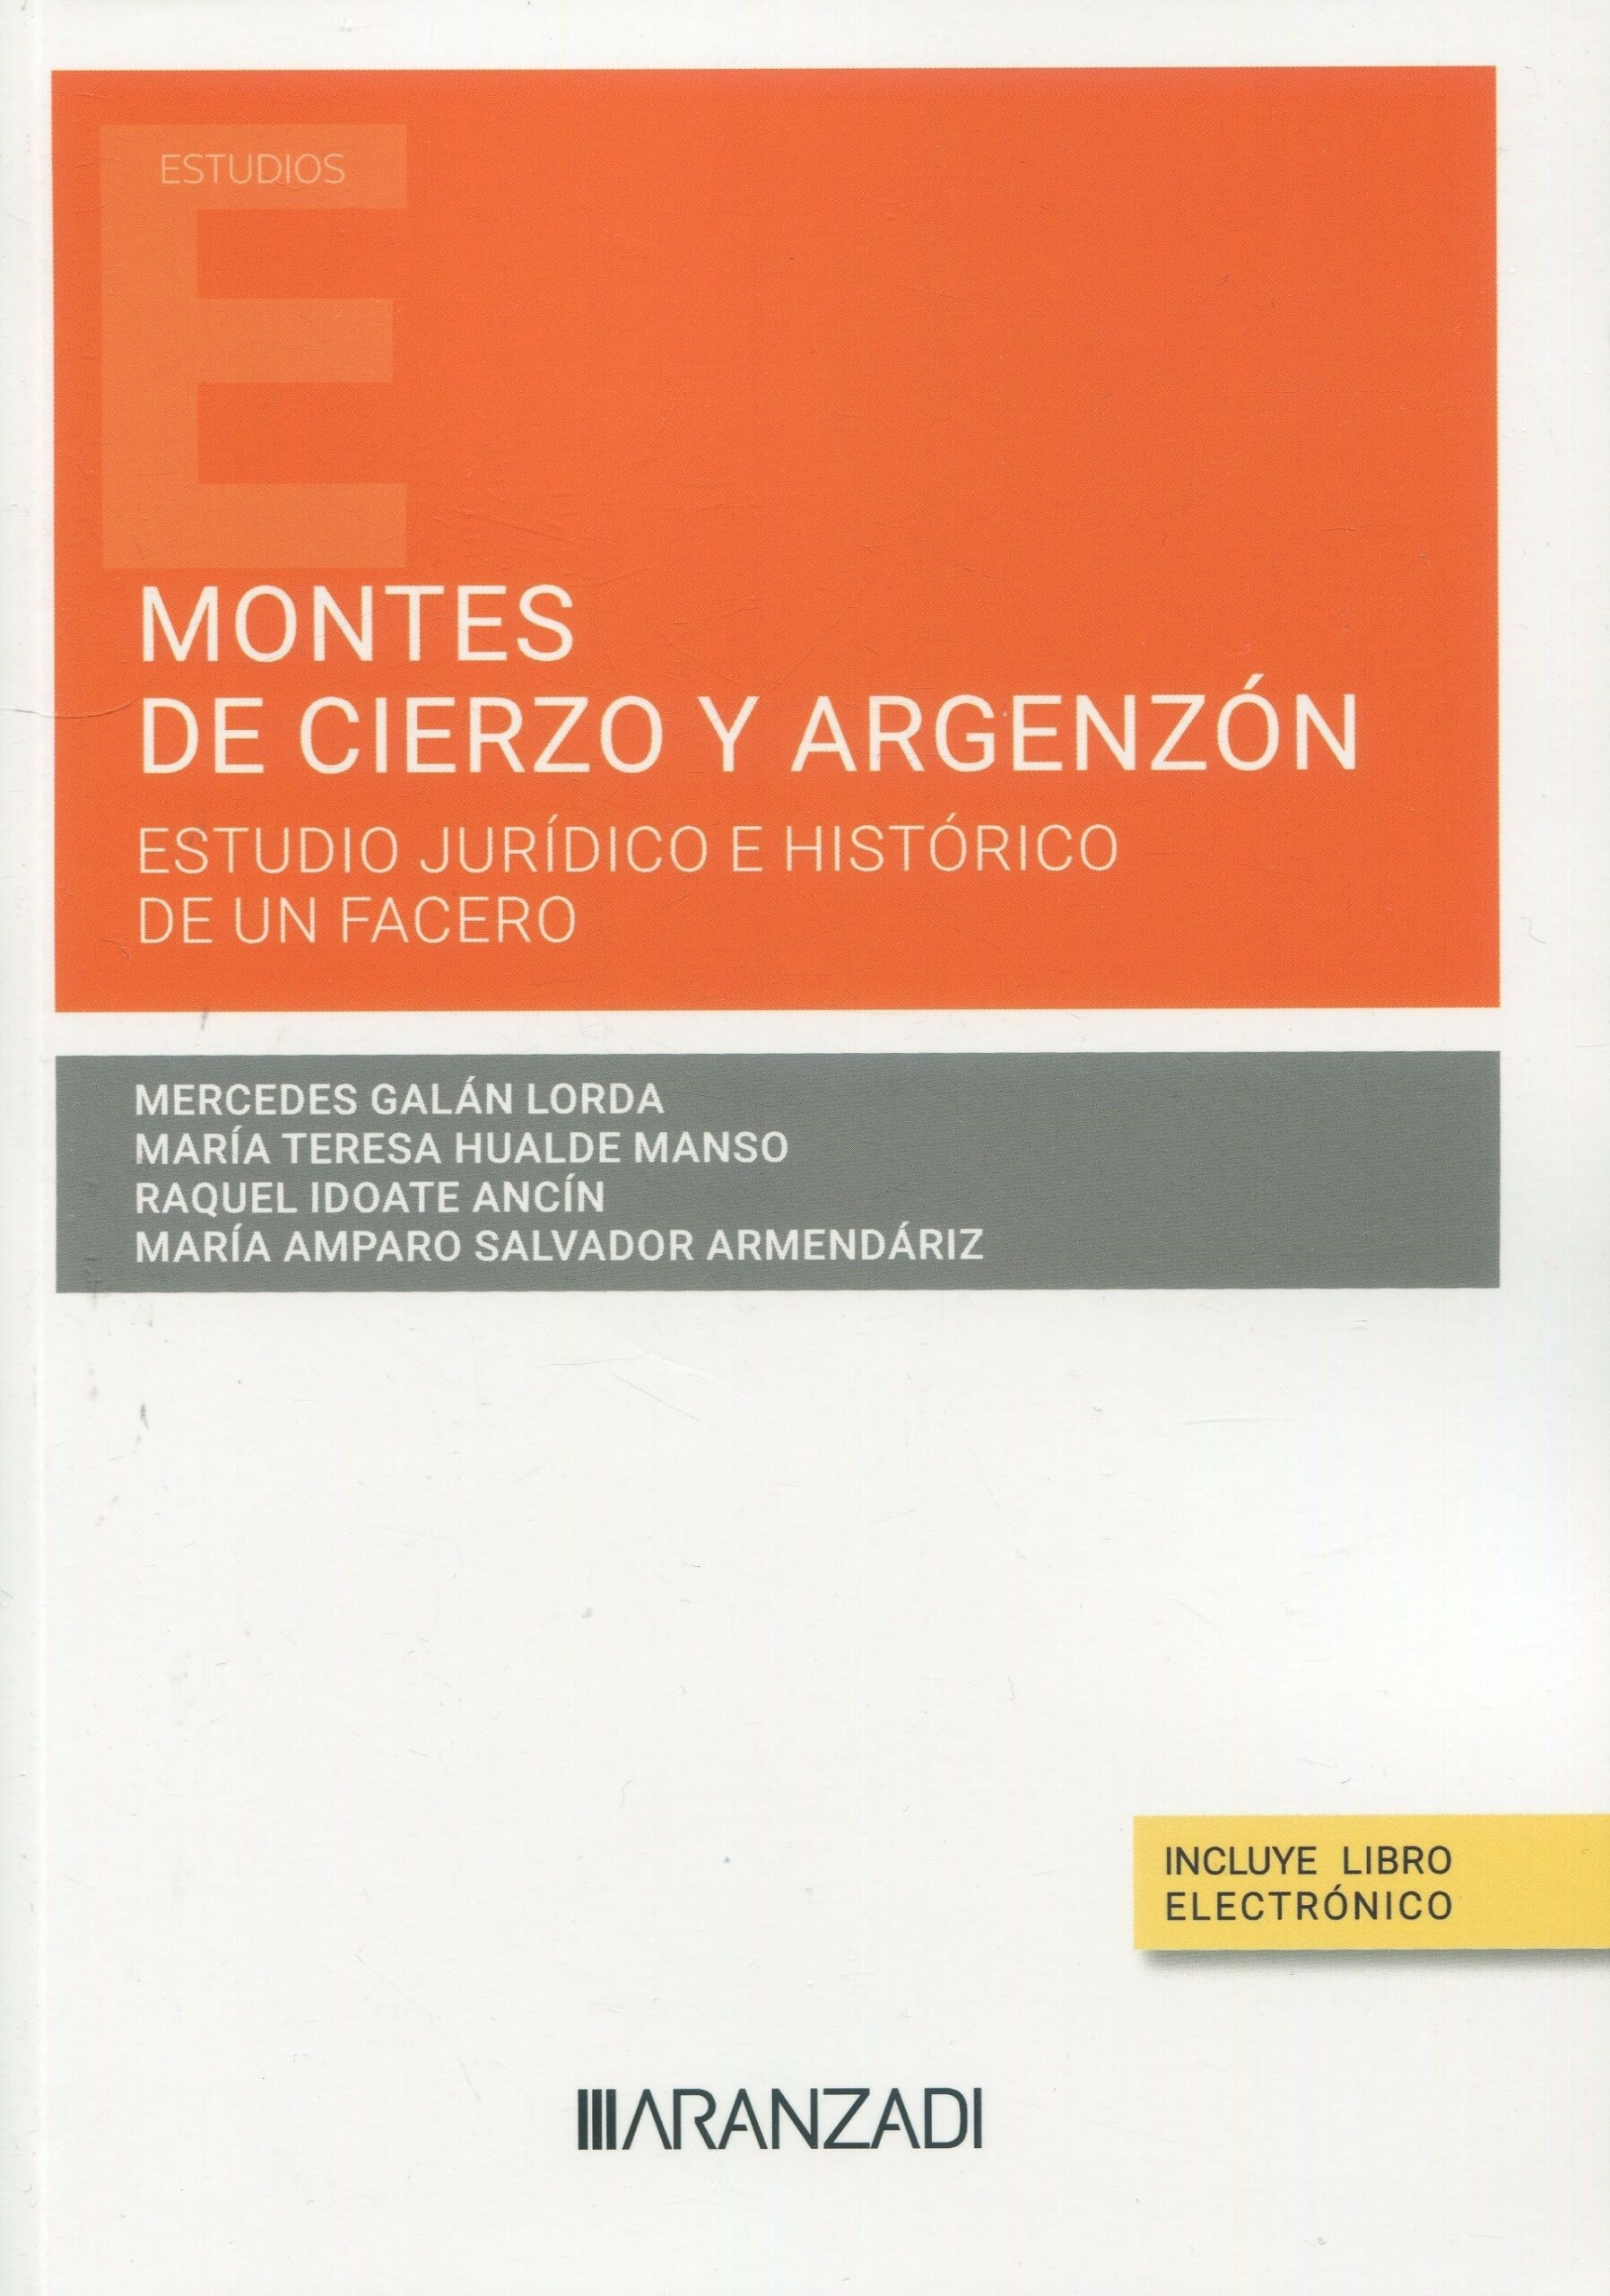 Montes del cierzo y argenzon subtitulo estudio juridico e historico de